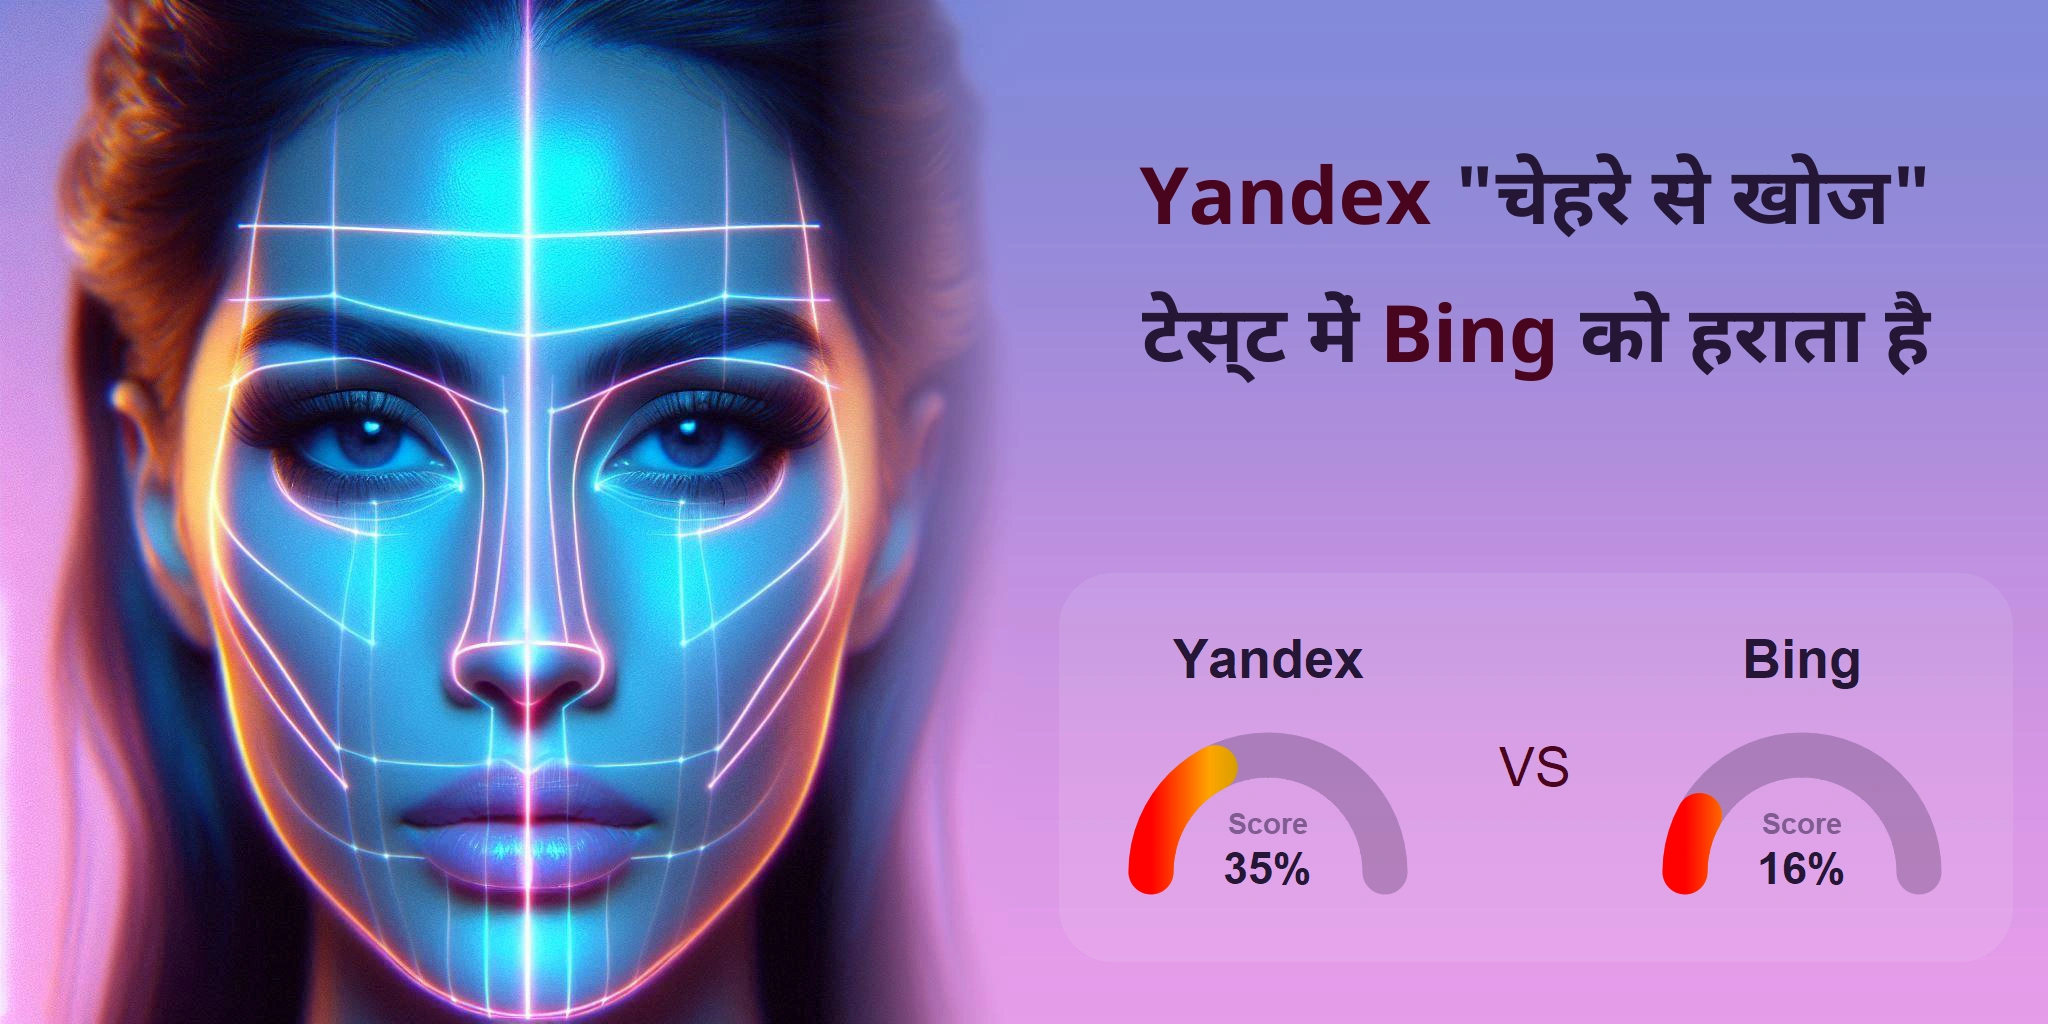 चेहरे की खोज के लिए कौन बेहतर है: <br>Bing या Yandex?